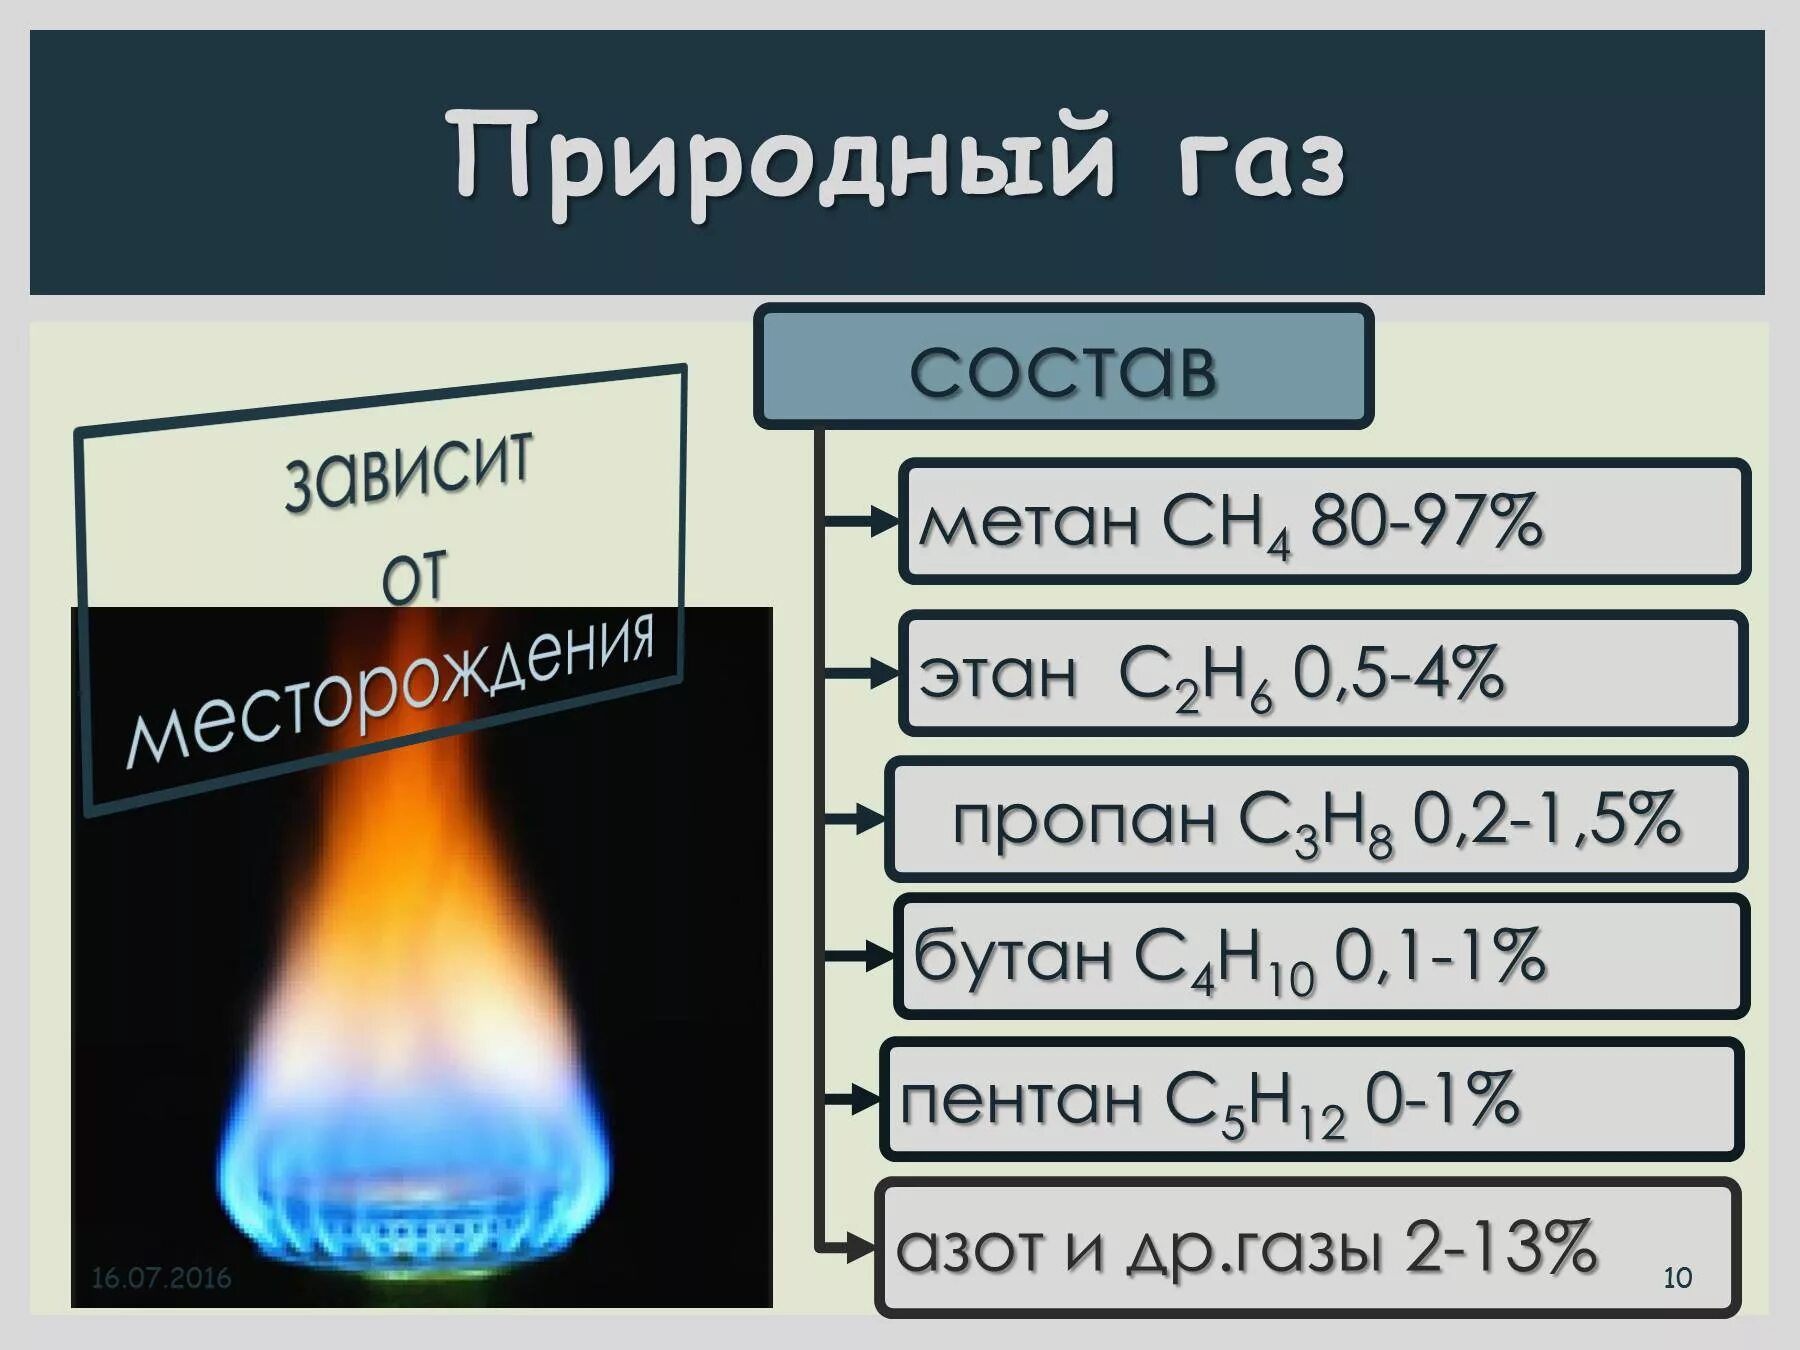 Фактический газ. Состав смеси природного газа. Природный ГАЗ состав. Состав природного газа метан. Из чего состоит природный ГАЗ.